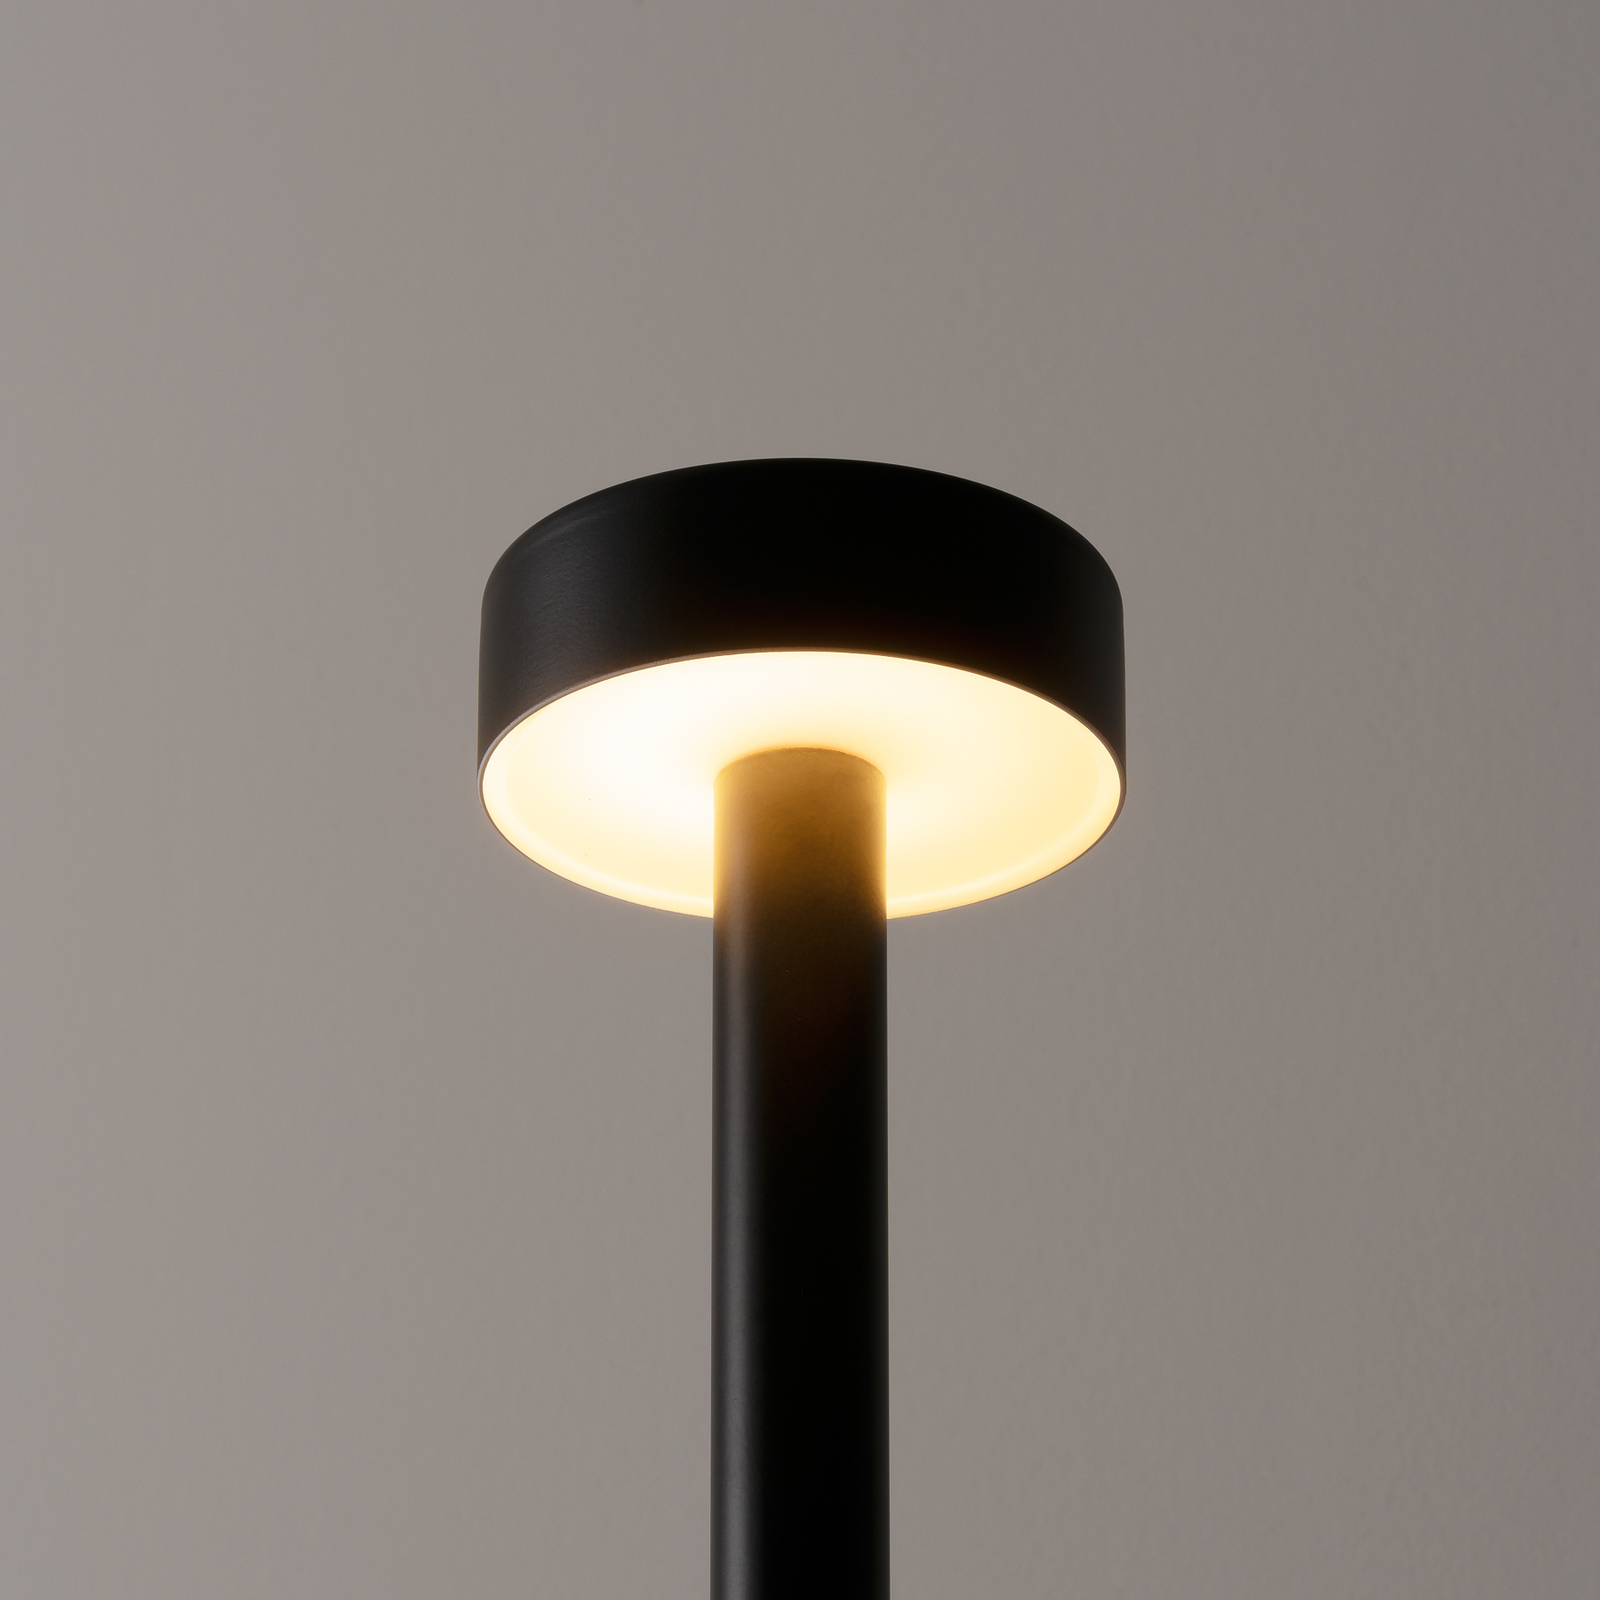 Milan Peak Lane lampe à poser LED, designer